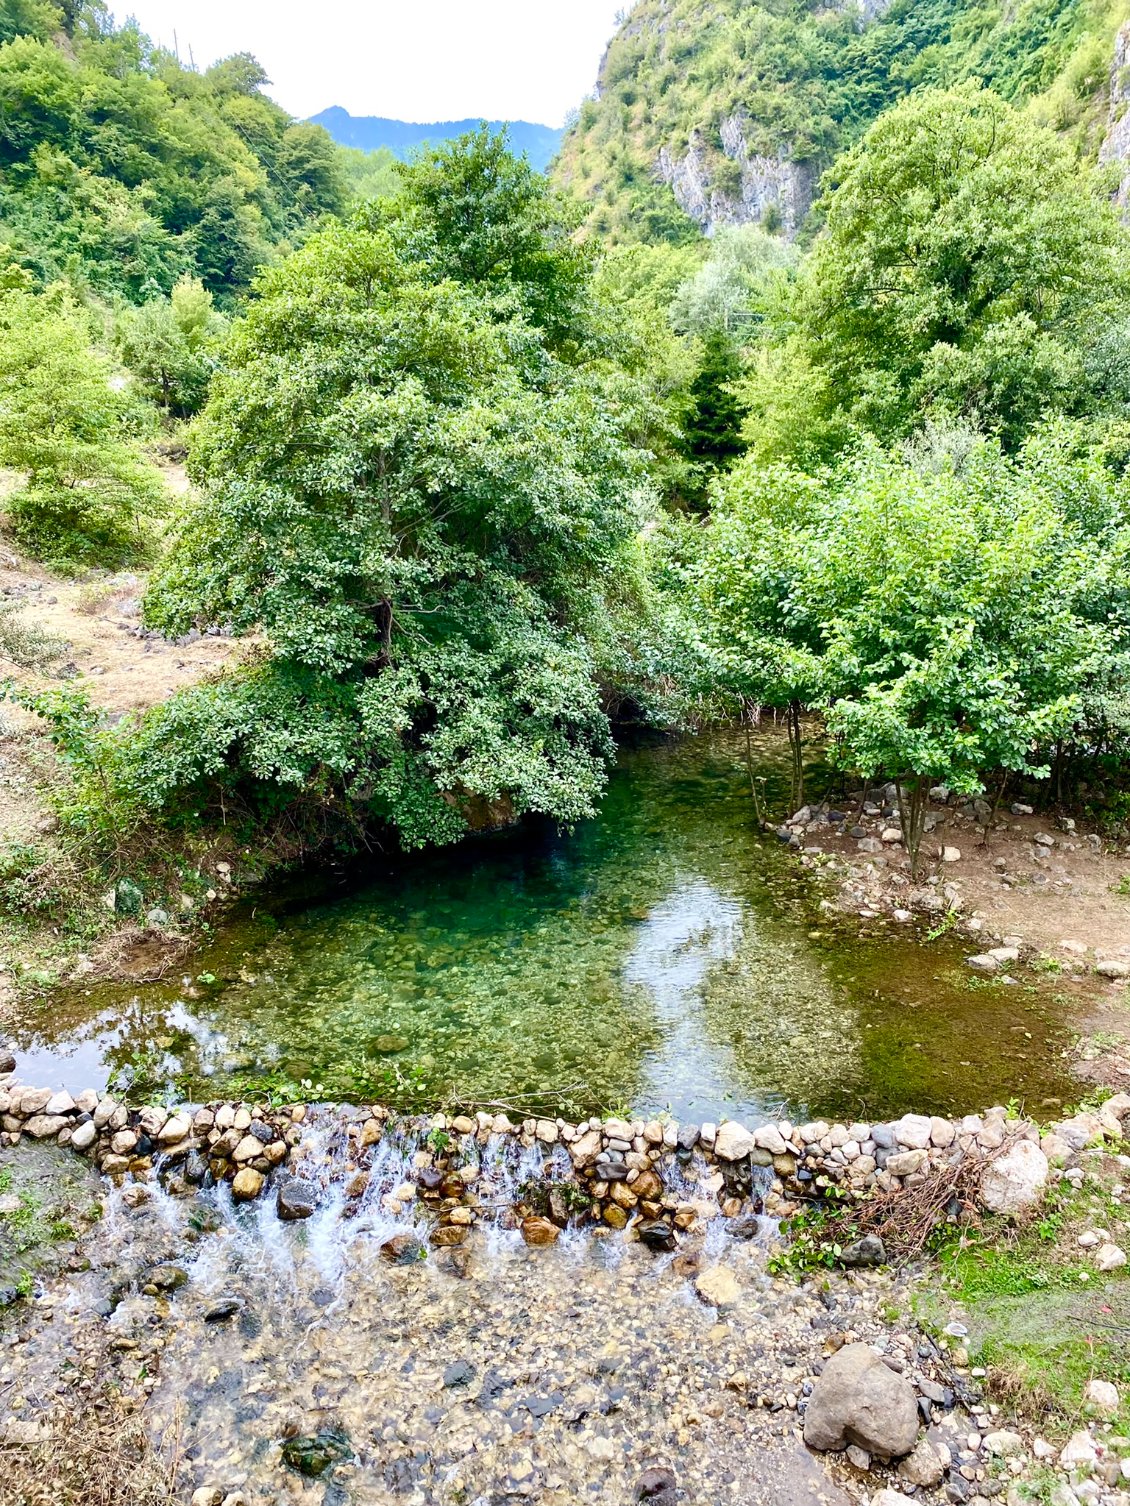 La rivière offre des coins idylliques pour d'éventuels bivouacs